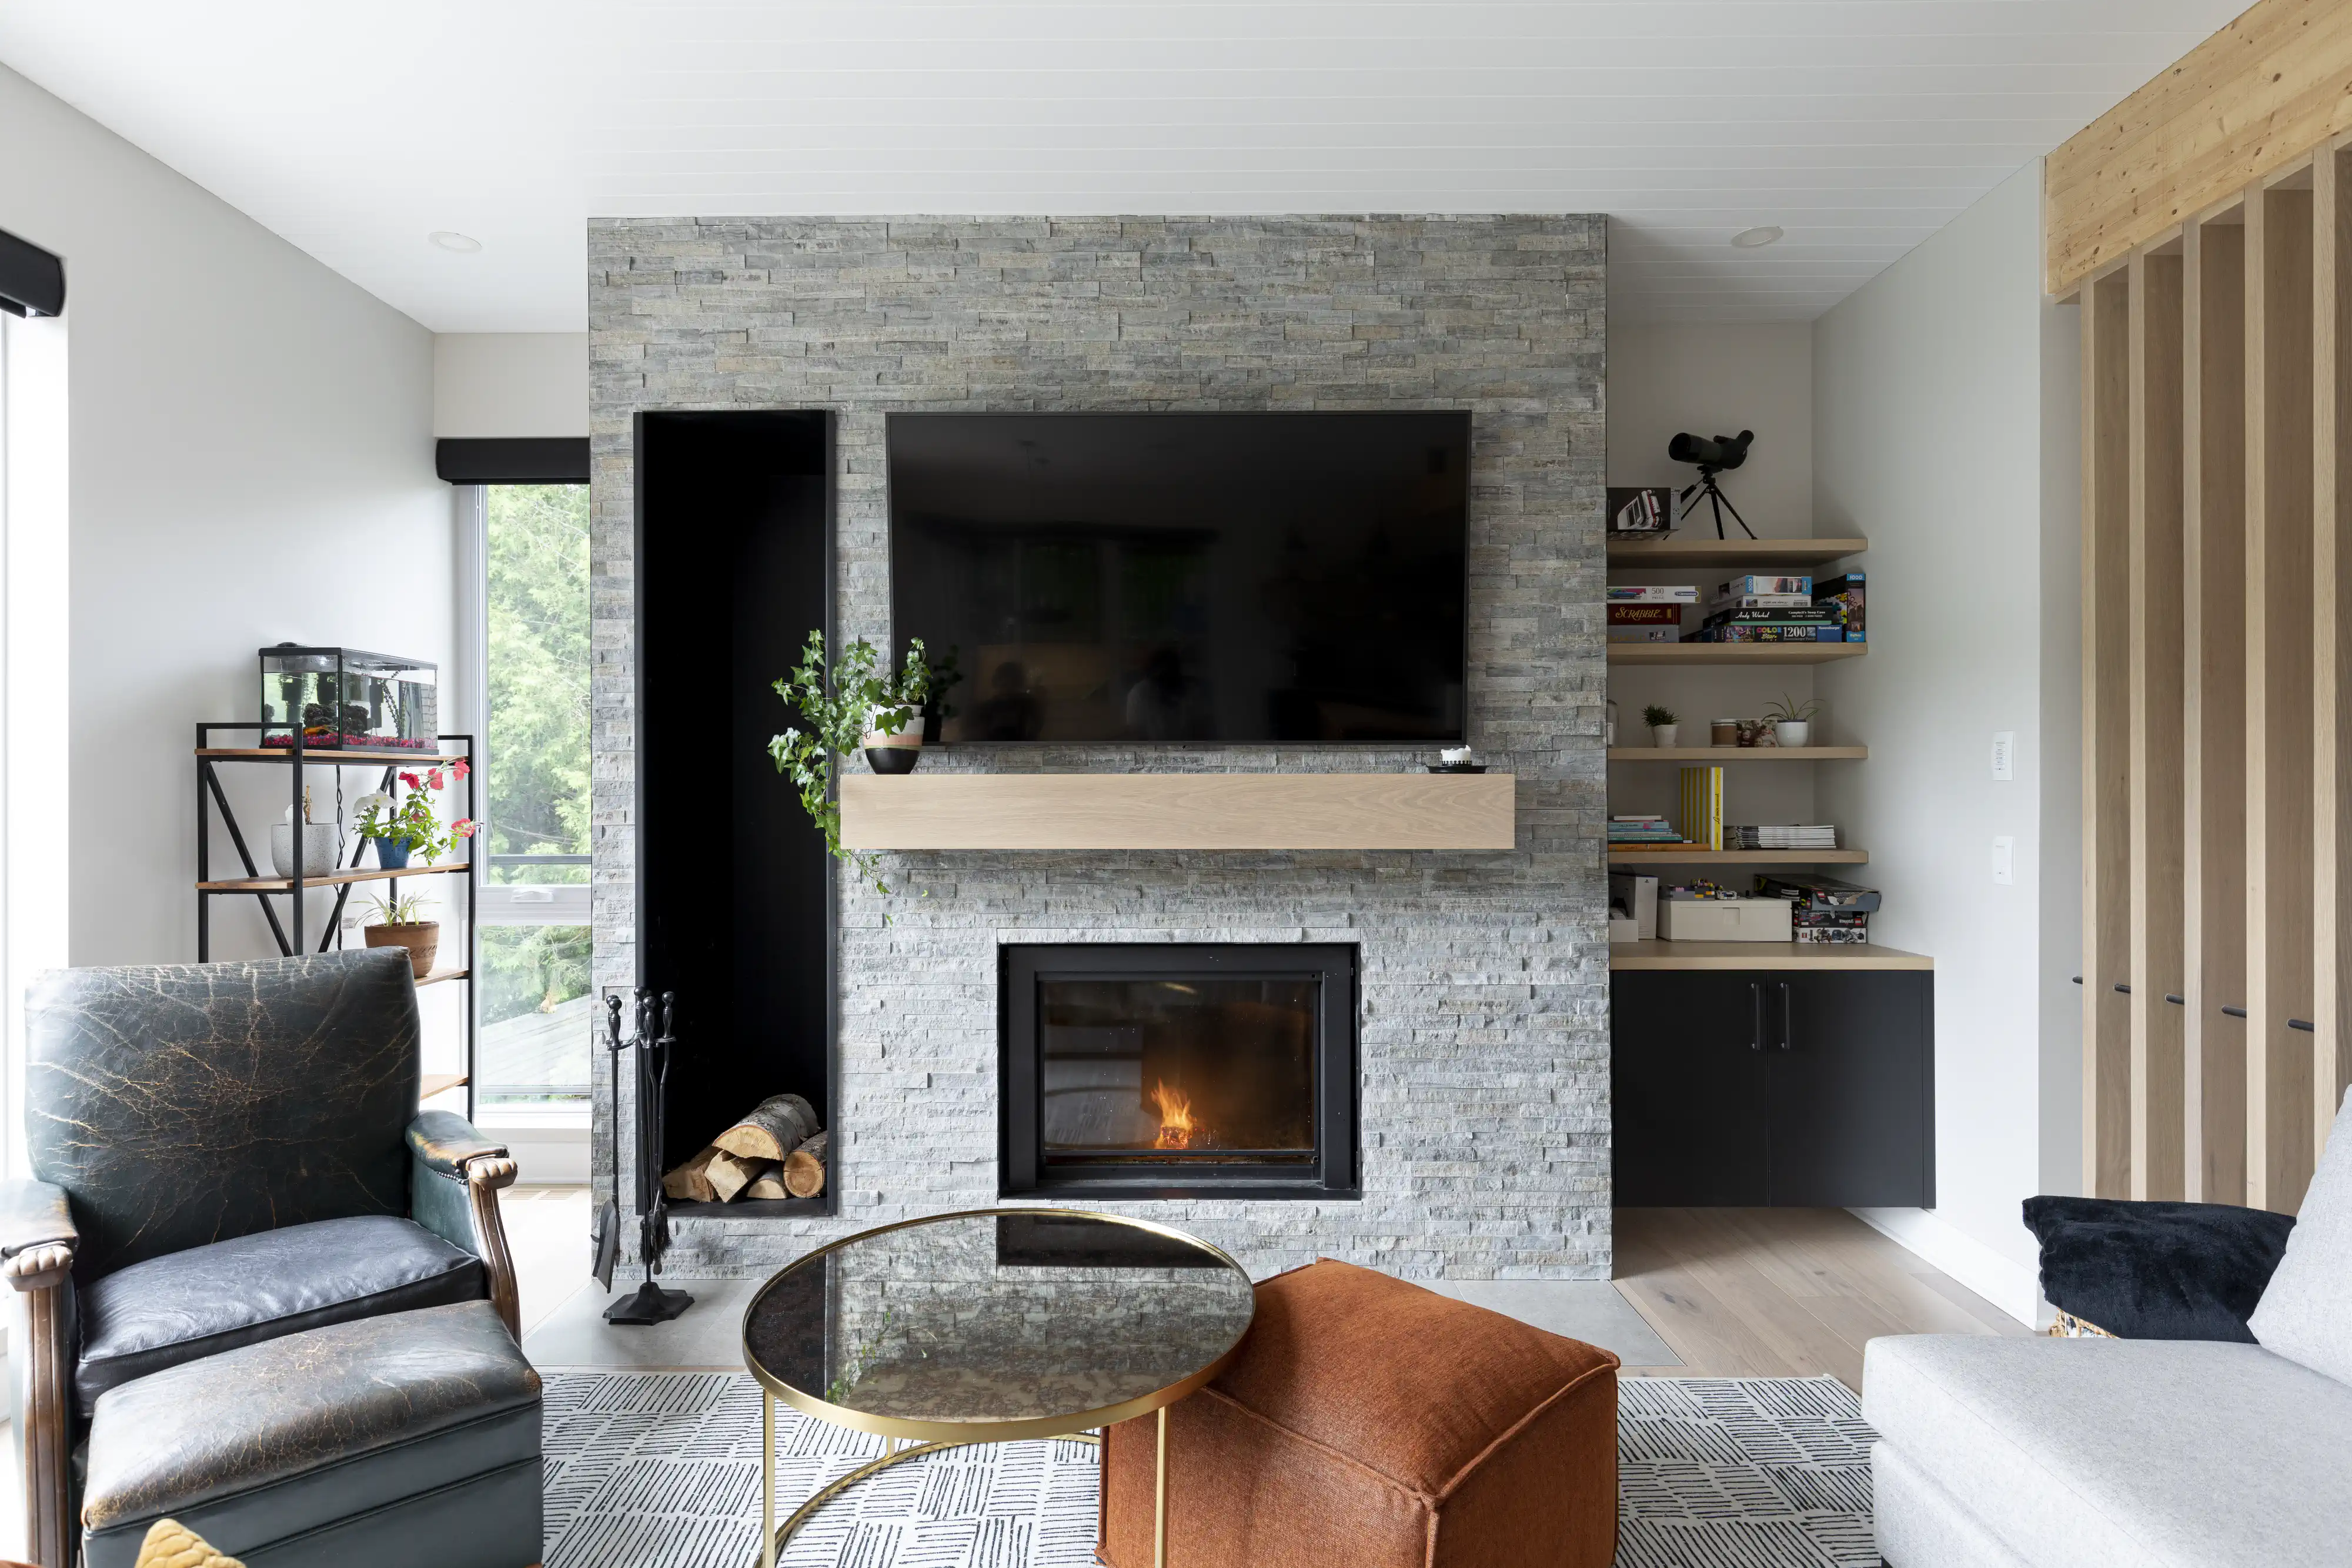 Un salon moderne avec une cheminée et une télévision, intérieur signé Sarah Brown Design